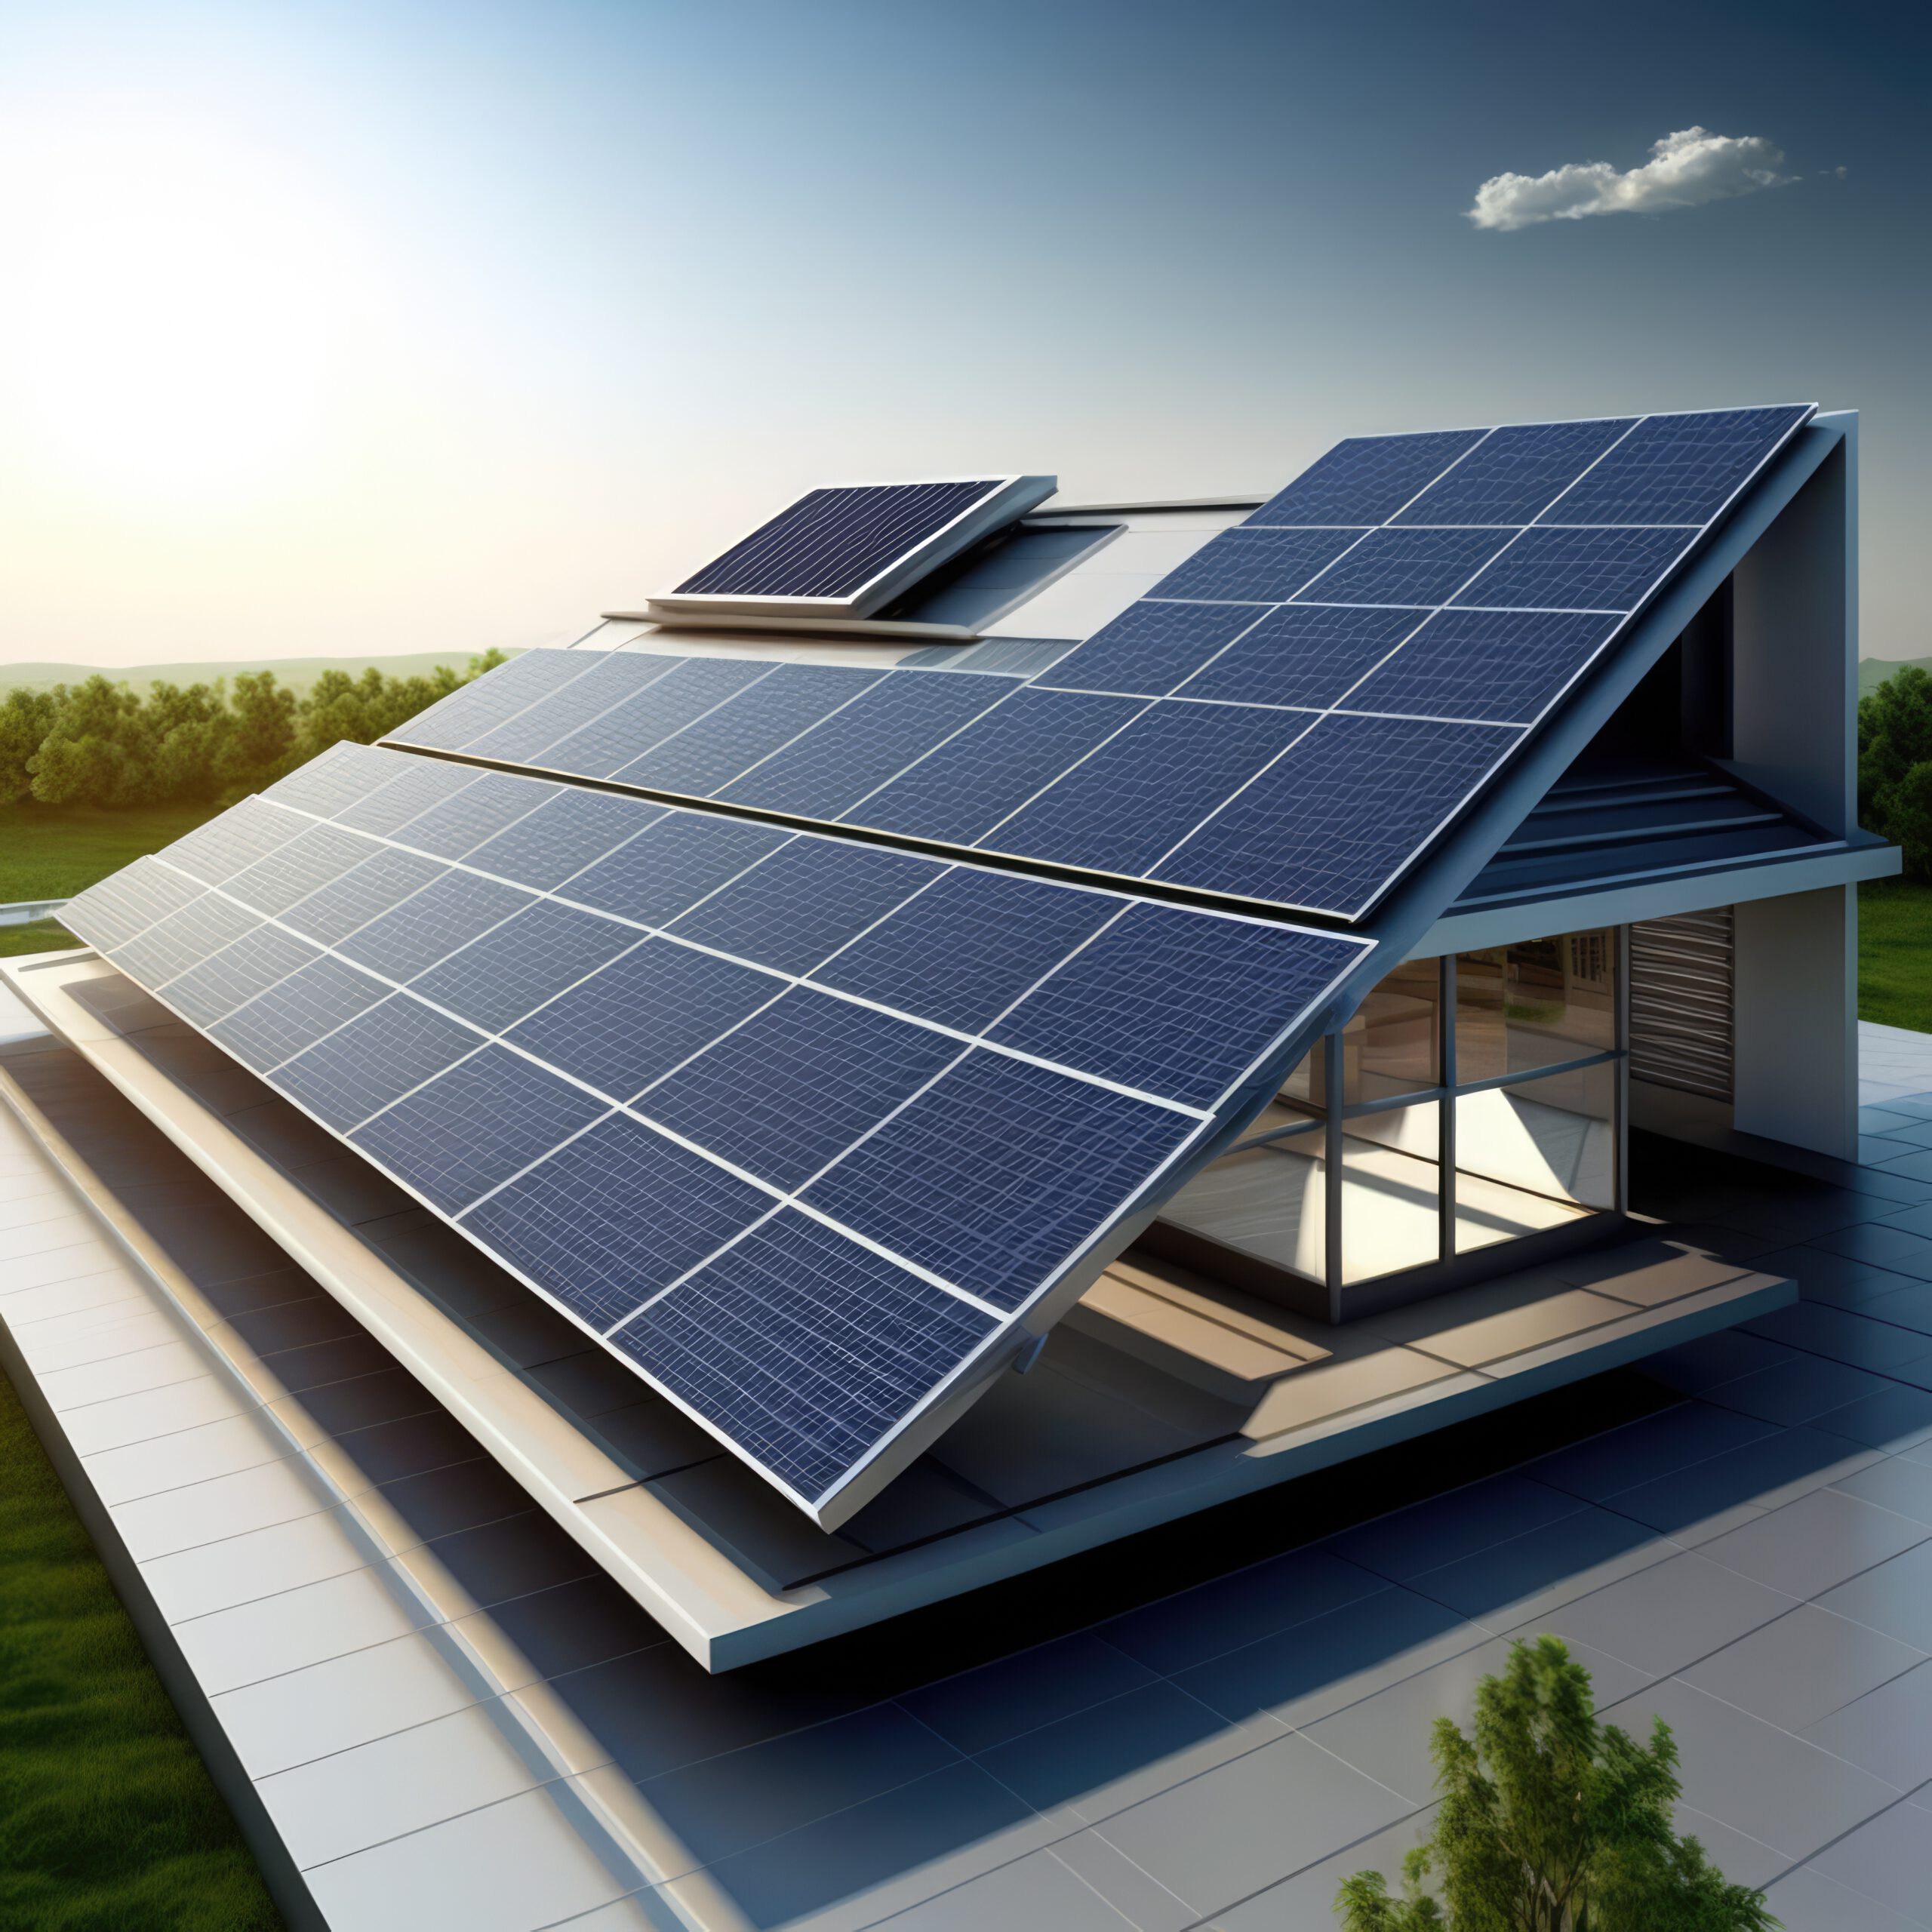 casa-com-paineis-solares-no-telhado-criados-usando-tecnologia-de-ia-generativa